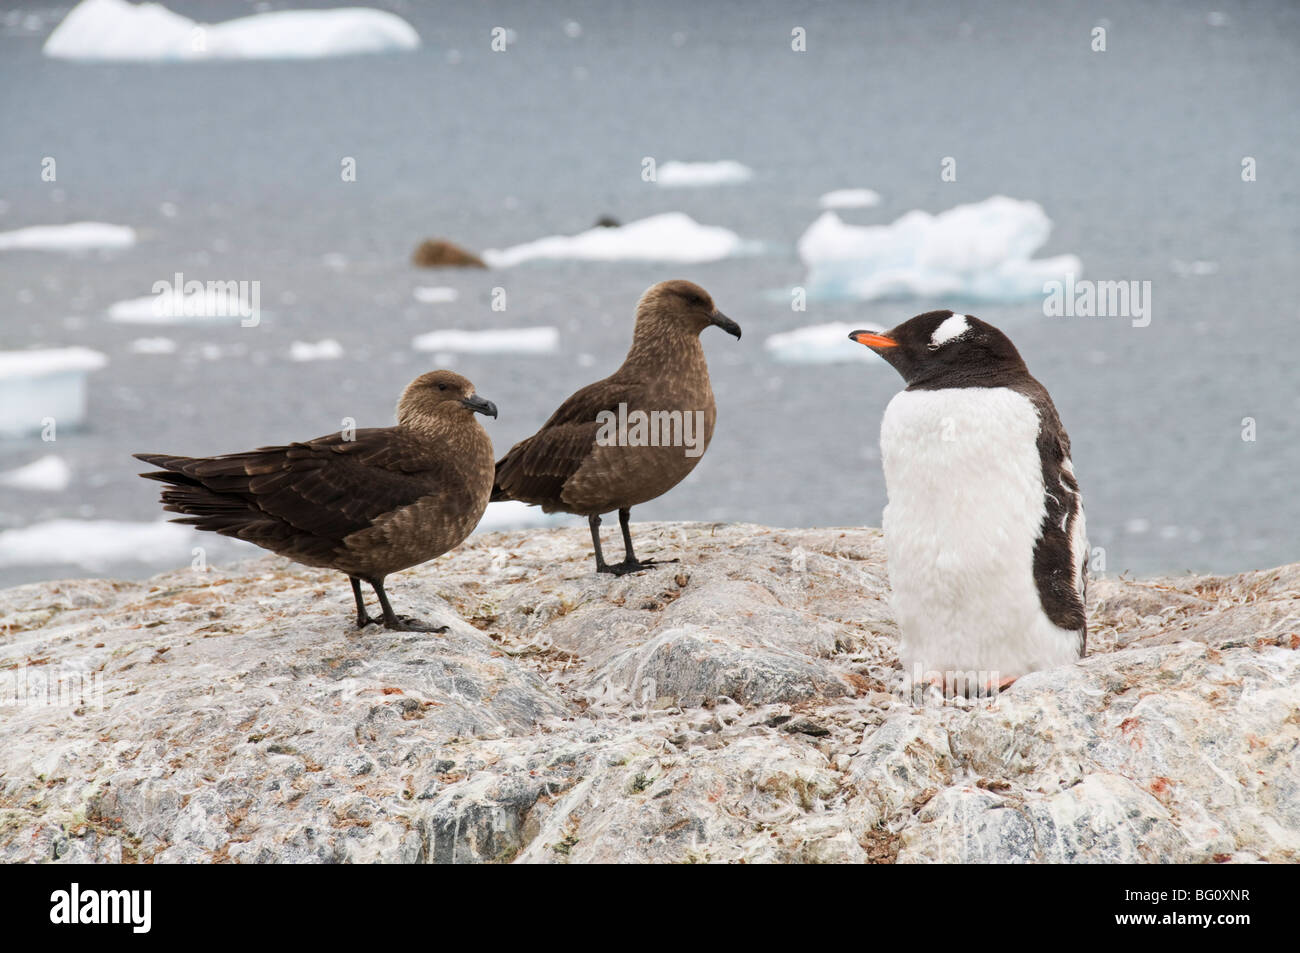 Skua marron et gentoo penguin, Cuverville Island, Péninsule Antarctique, l'Antarctique, régions polaires Banque D'Images